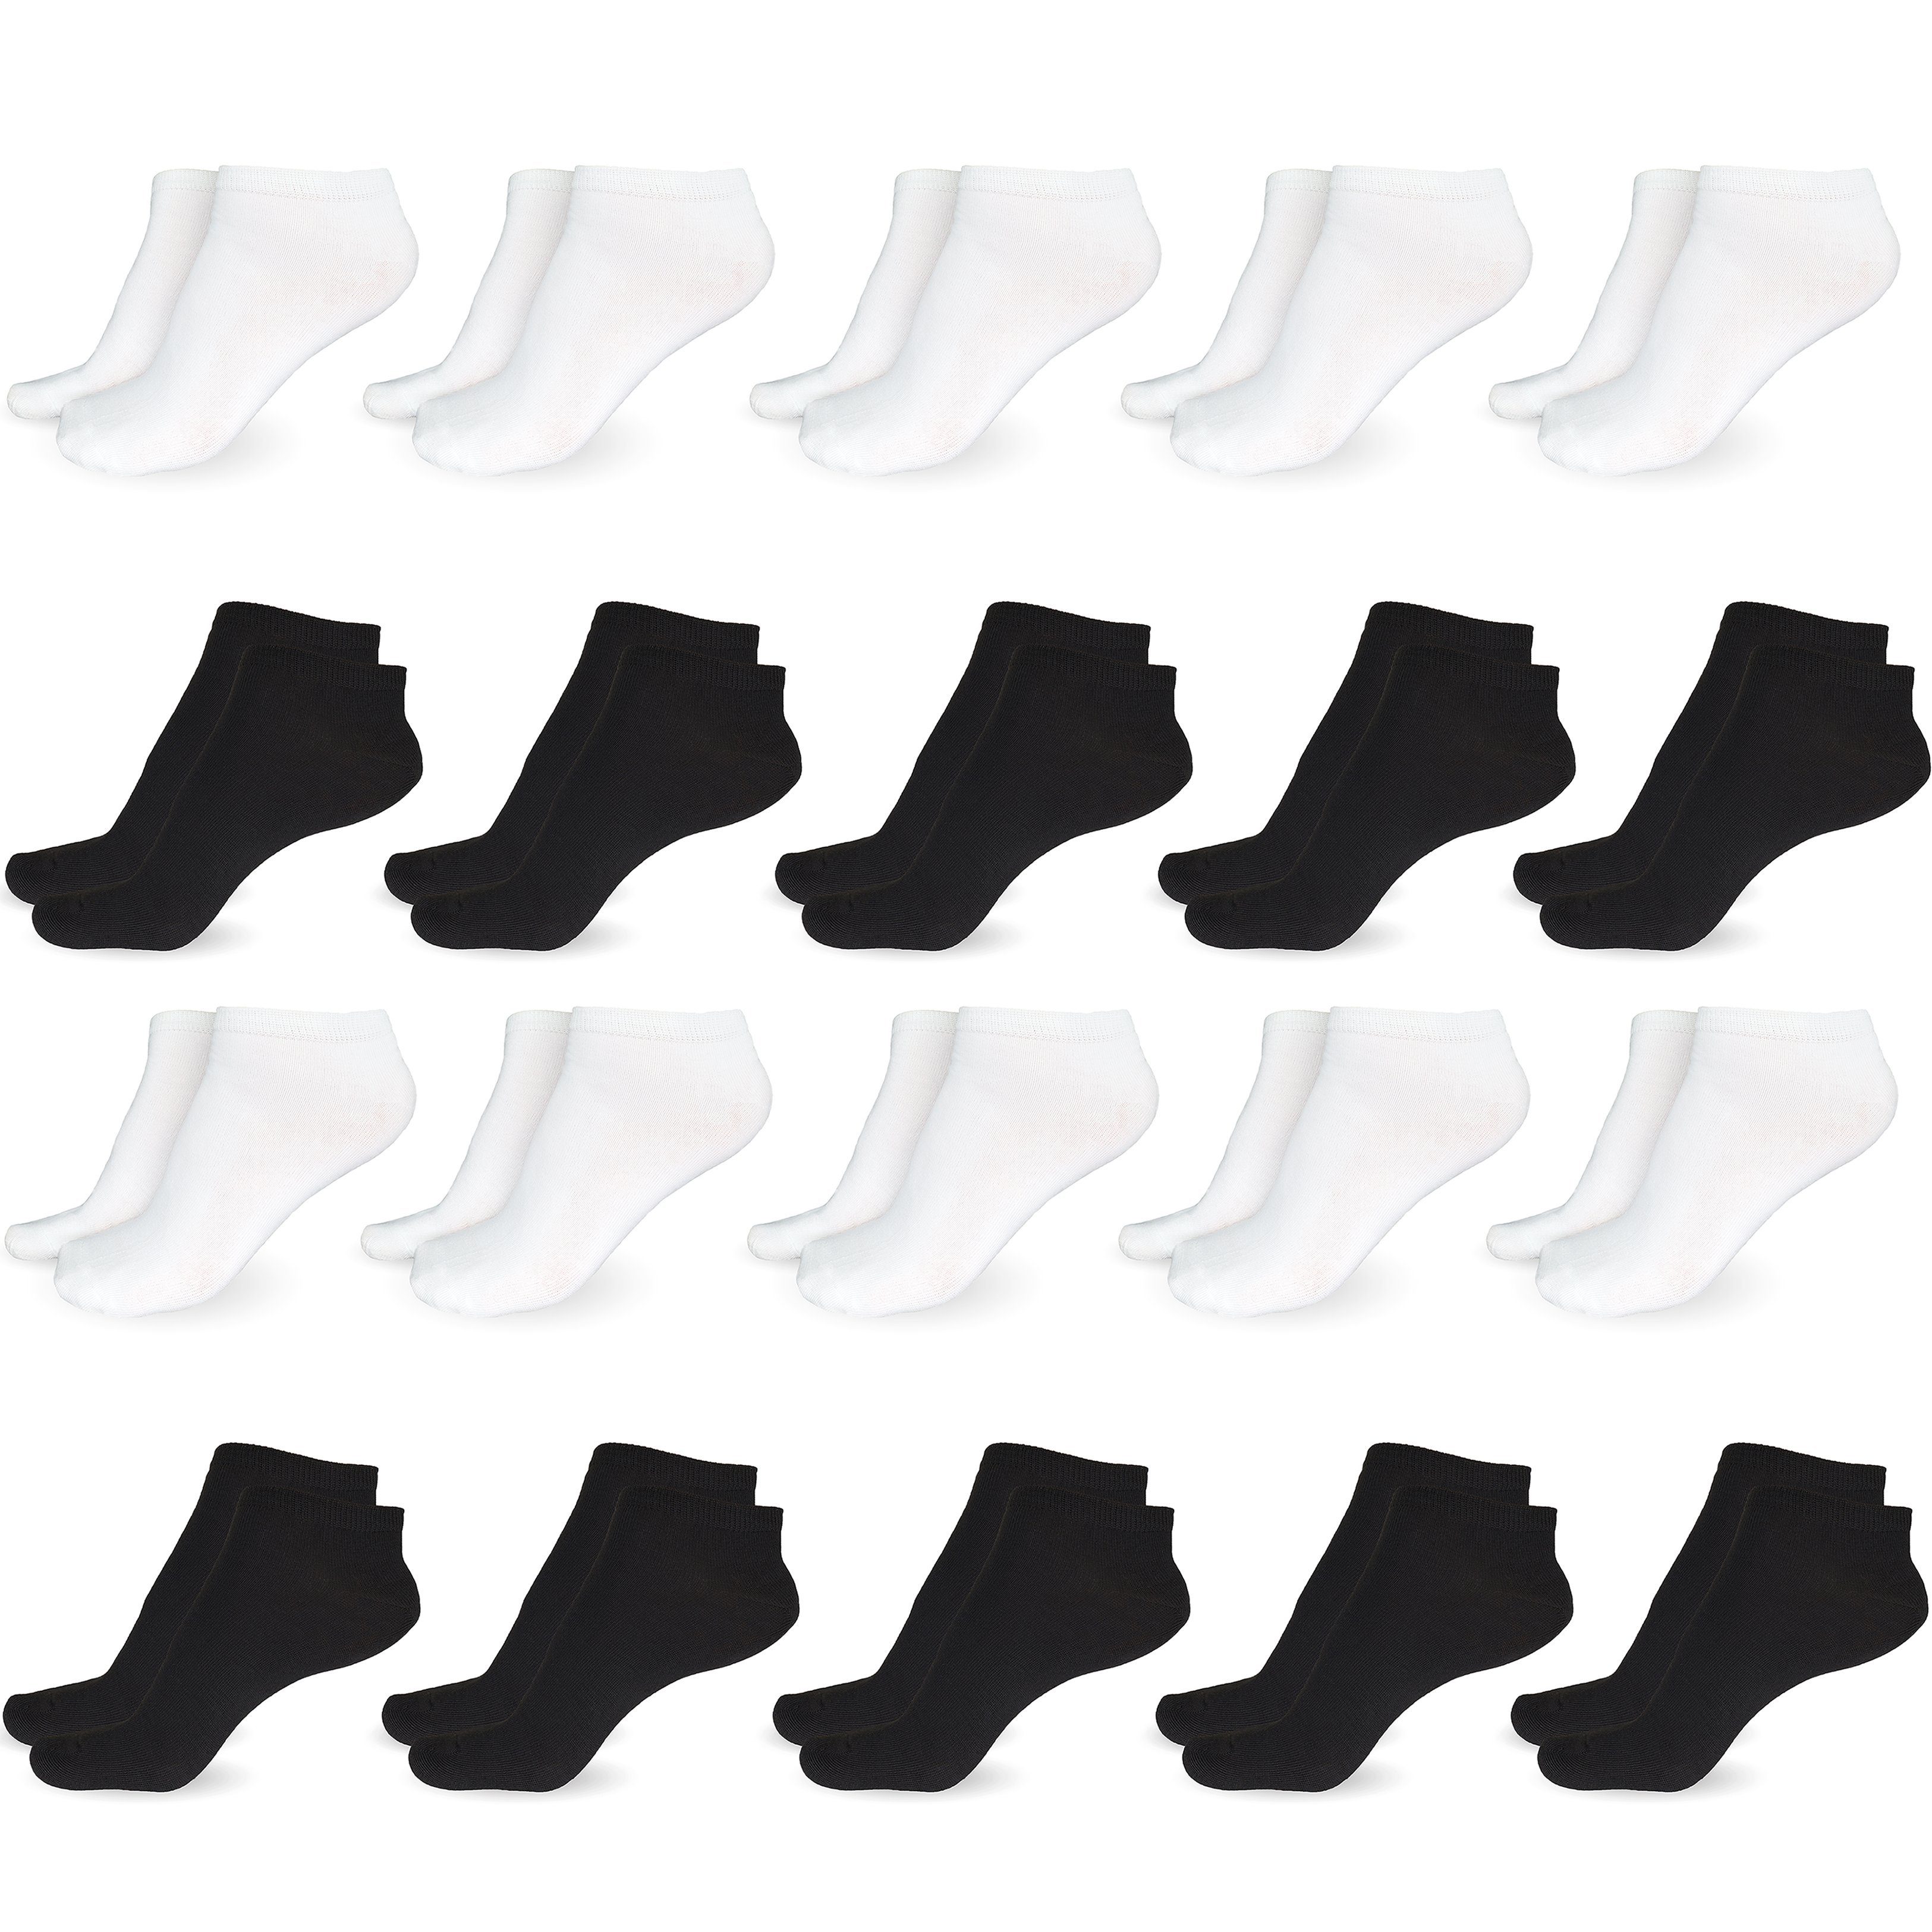 SO.I Freizeitsocken Sneaker Socken Damen & Herren aus Baumwolle (Größen 35-46, 5-20 Paar) atmungsaktive Unisex Socken 10x Schwarz + 10x Weiß